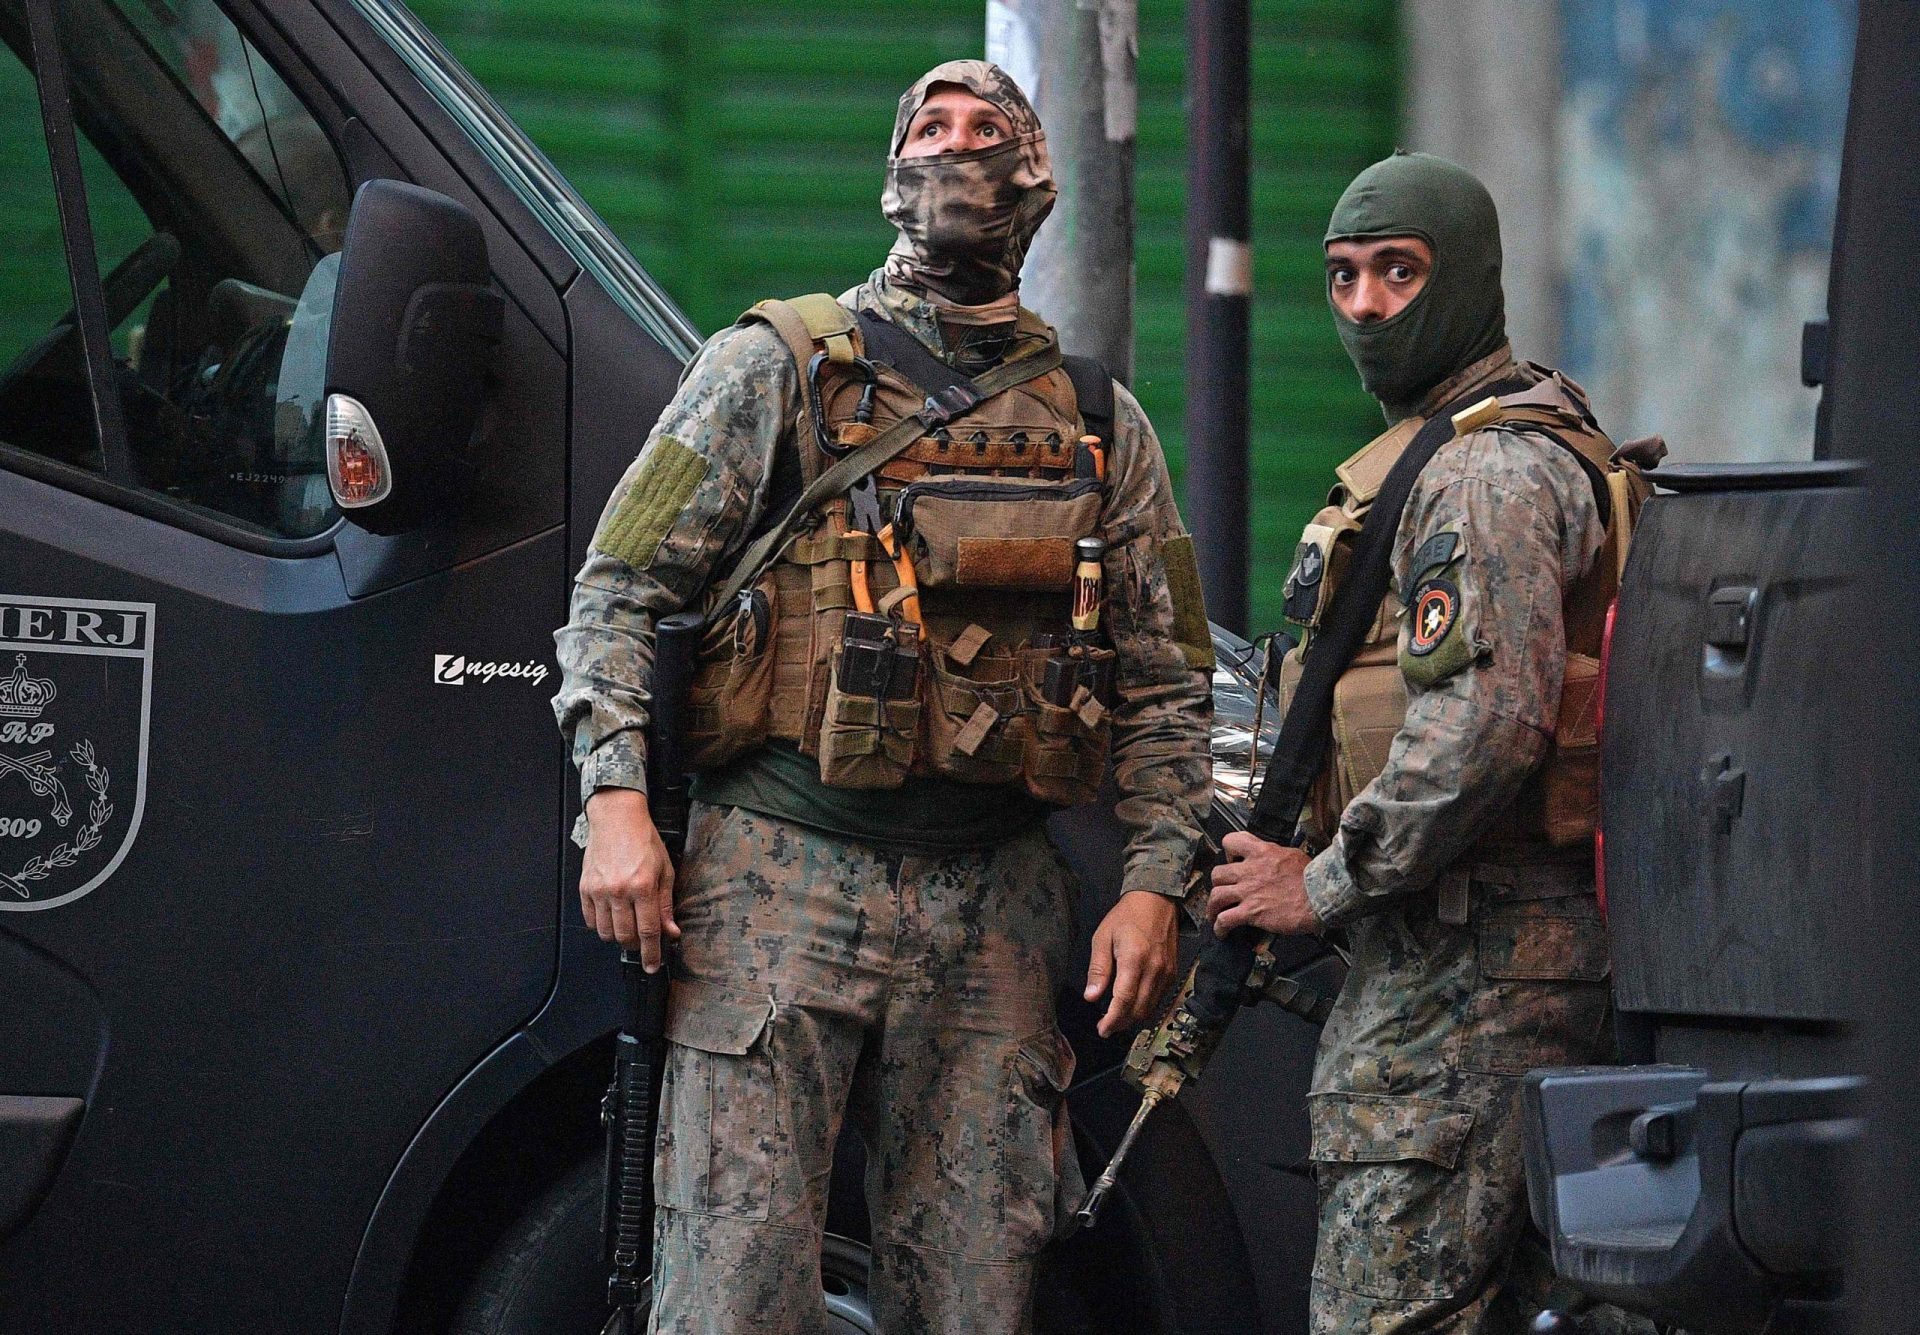 Divulgados vídeos da operação policial no Brasil que provocou nove mortos